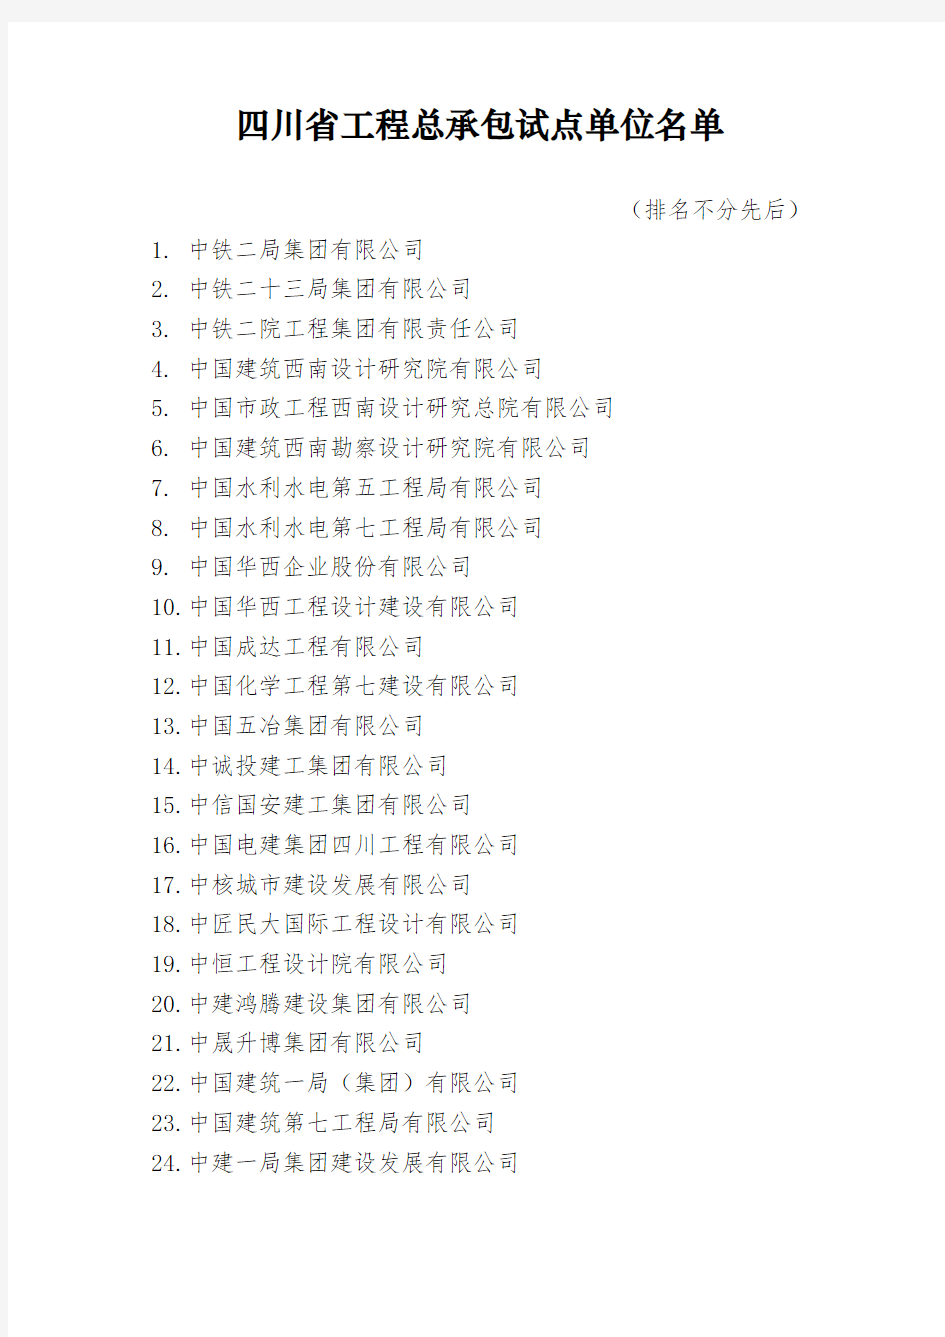 四川省工程总承包试点单位名单(2020版)